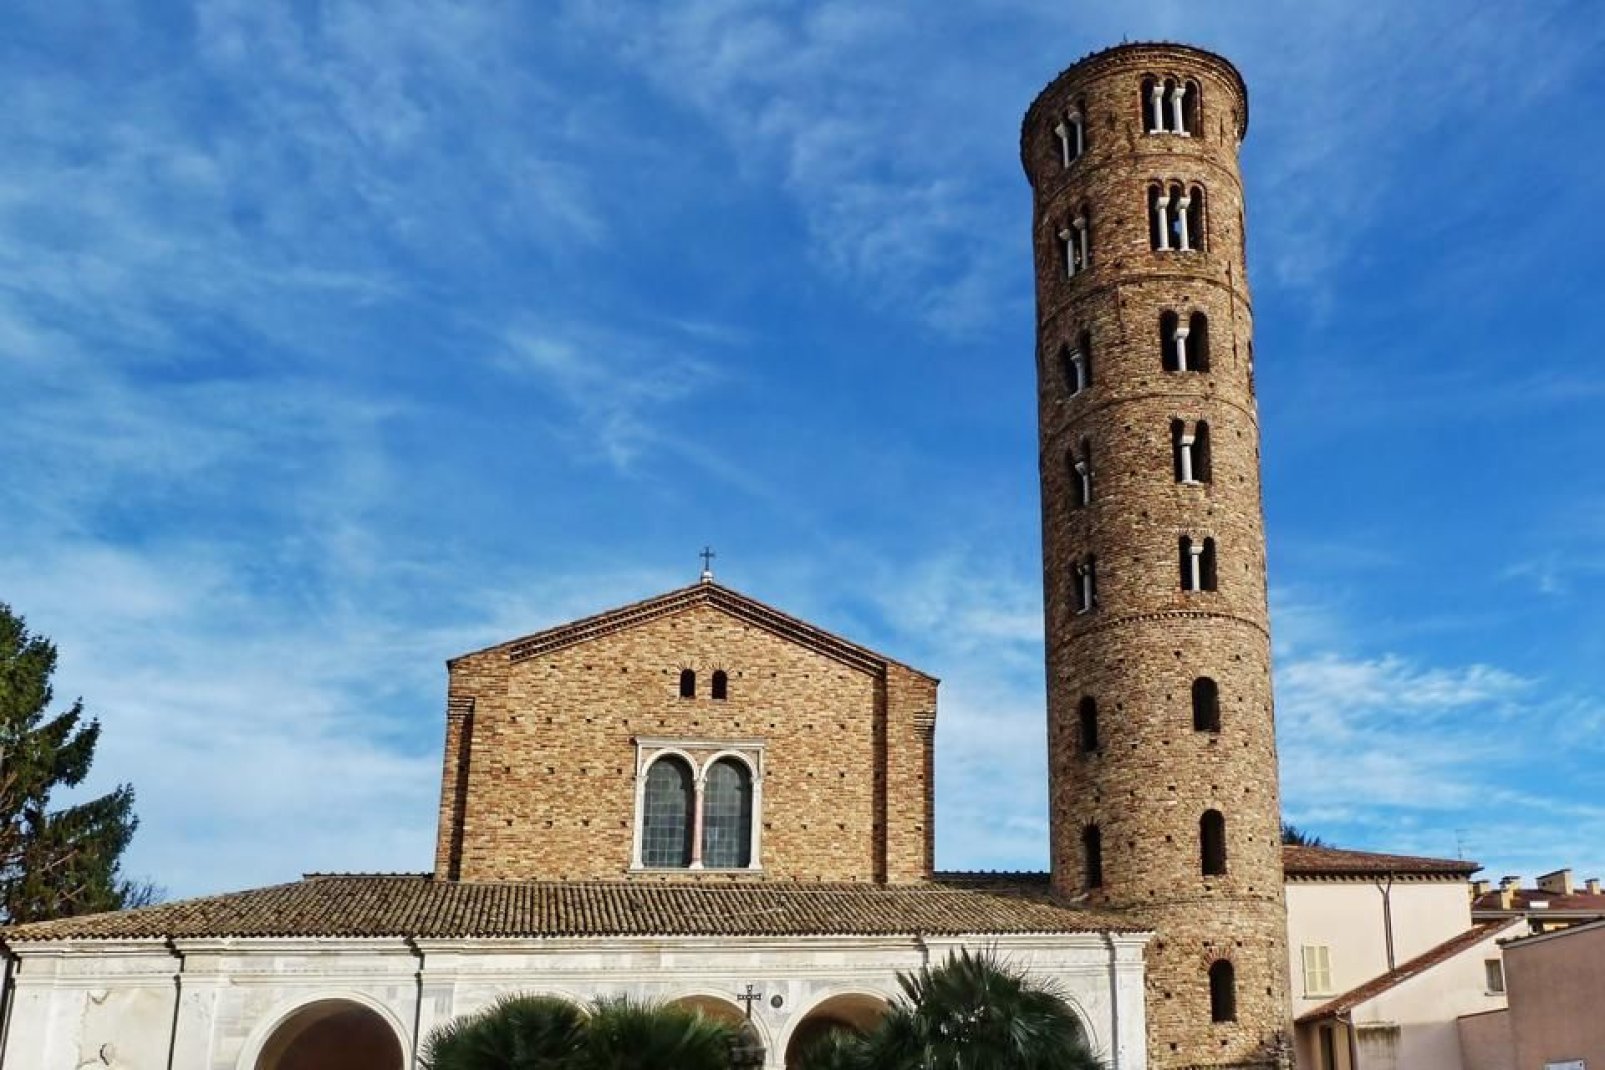 La iglesia de Santa María la Mayor de Rávena fue construida por el obispo Ecclesio durante las primeras décadas del siglo VI y reconstruida en 1671.